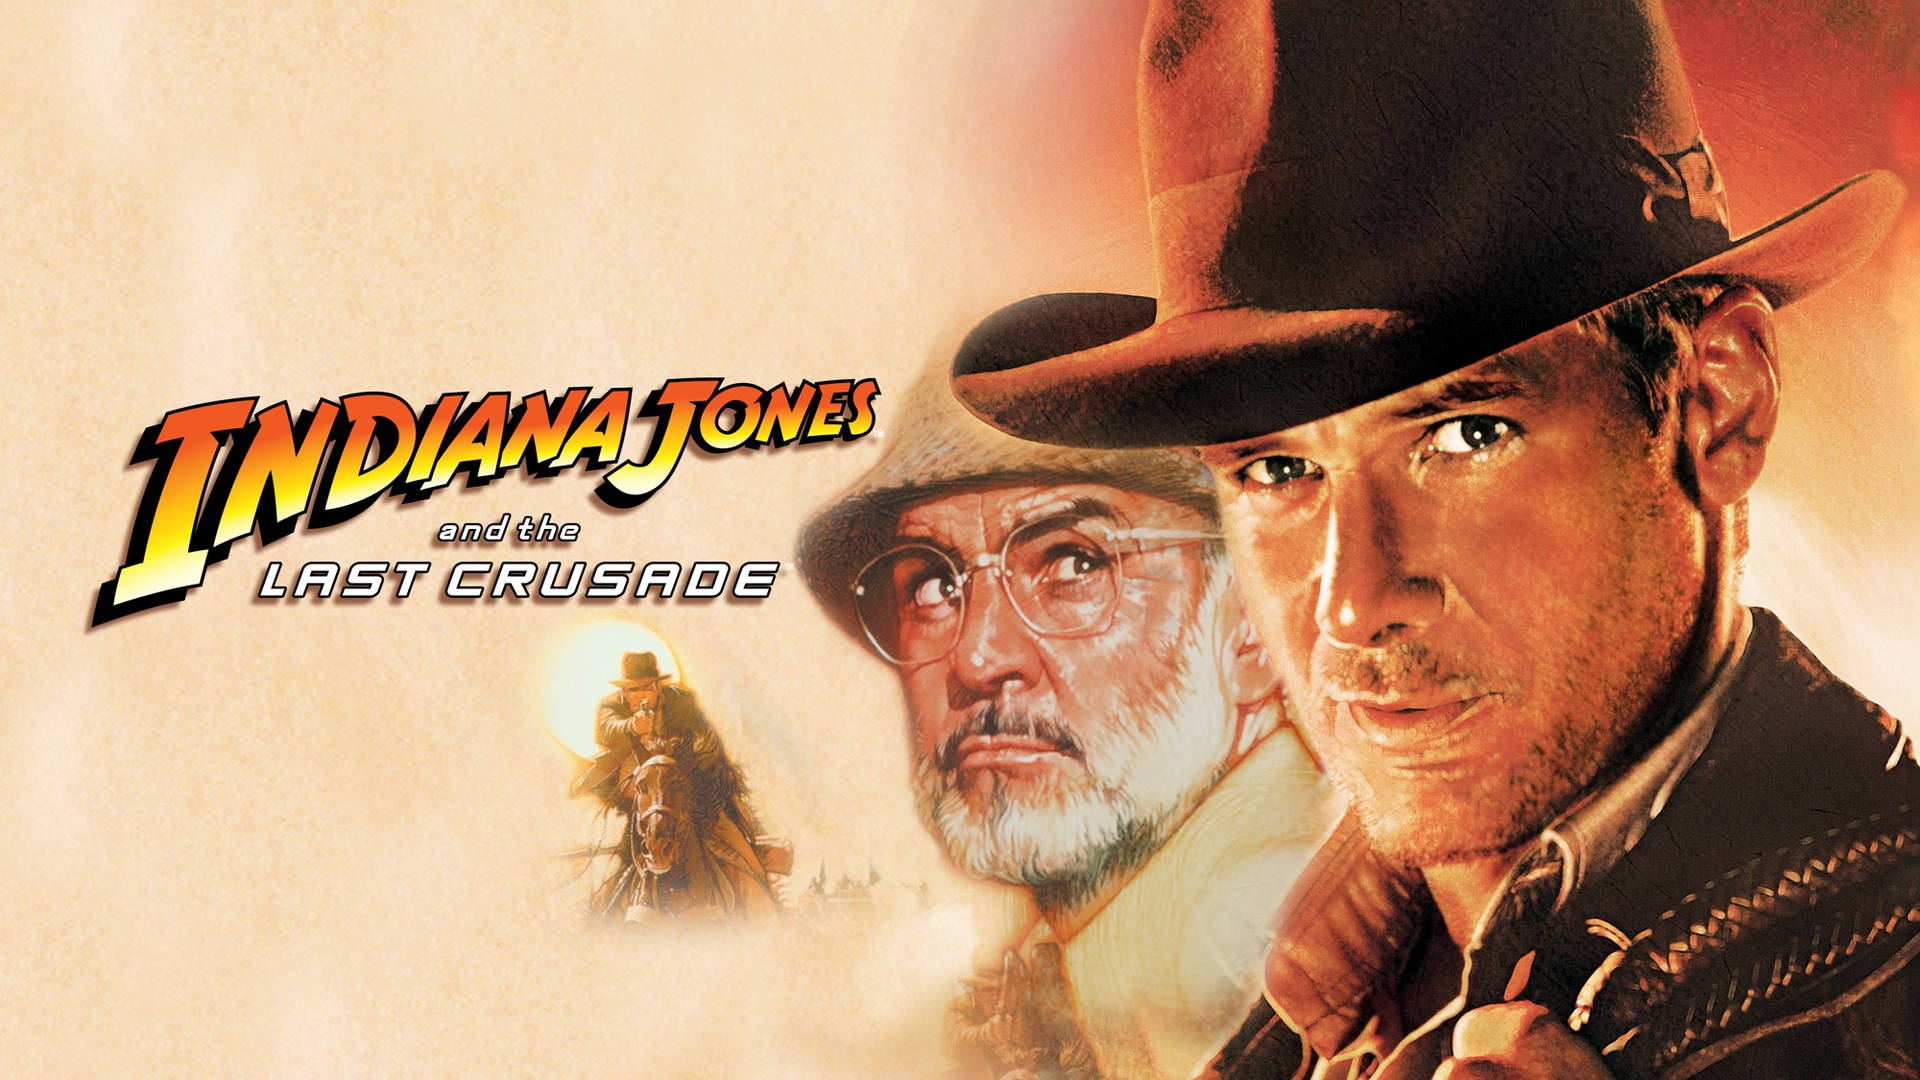 Free Indiana Jones Wallpaper Downloads, Indiana Jones Wallpaper for FREE